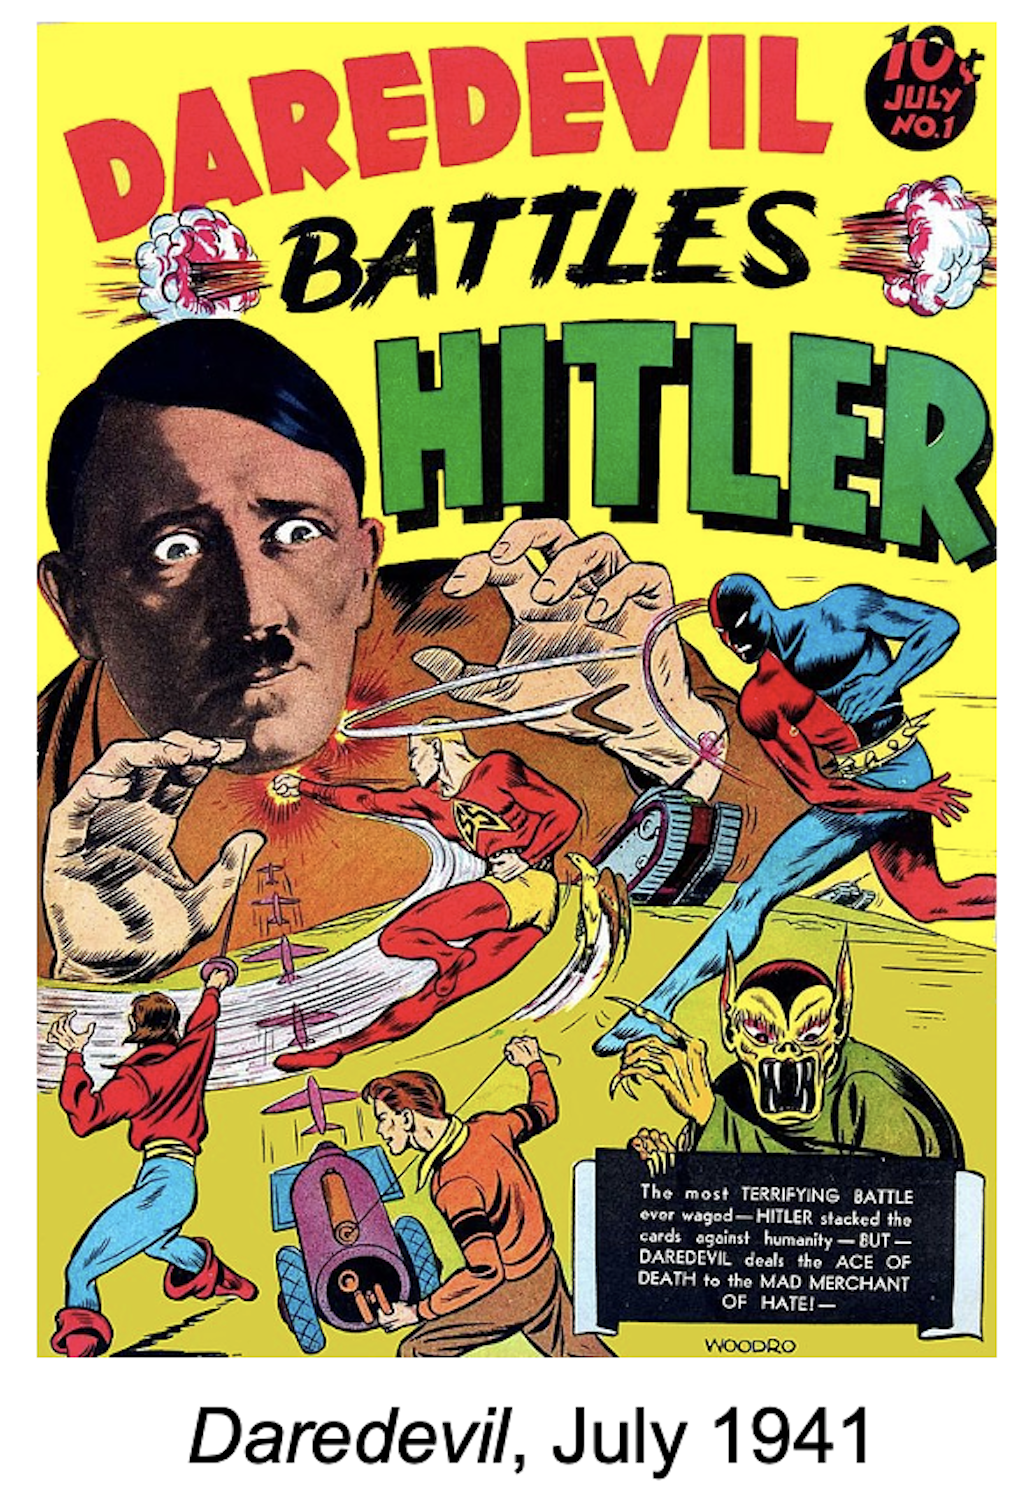 Daredevil bekämpft Hitler -Published Lev Gleason Publications